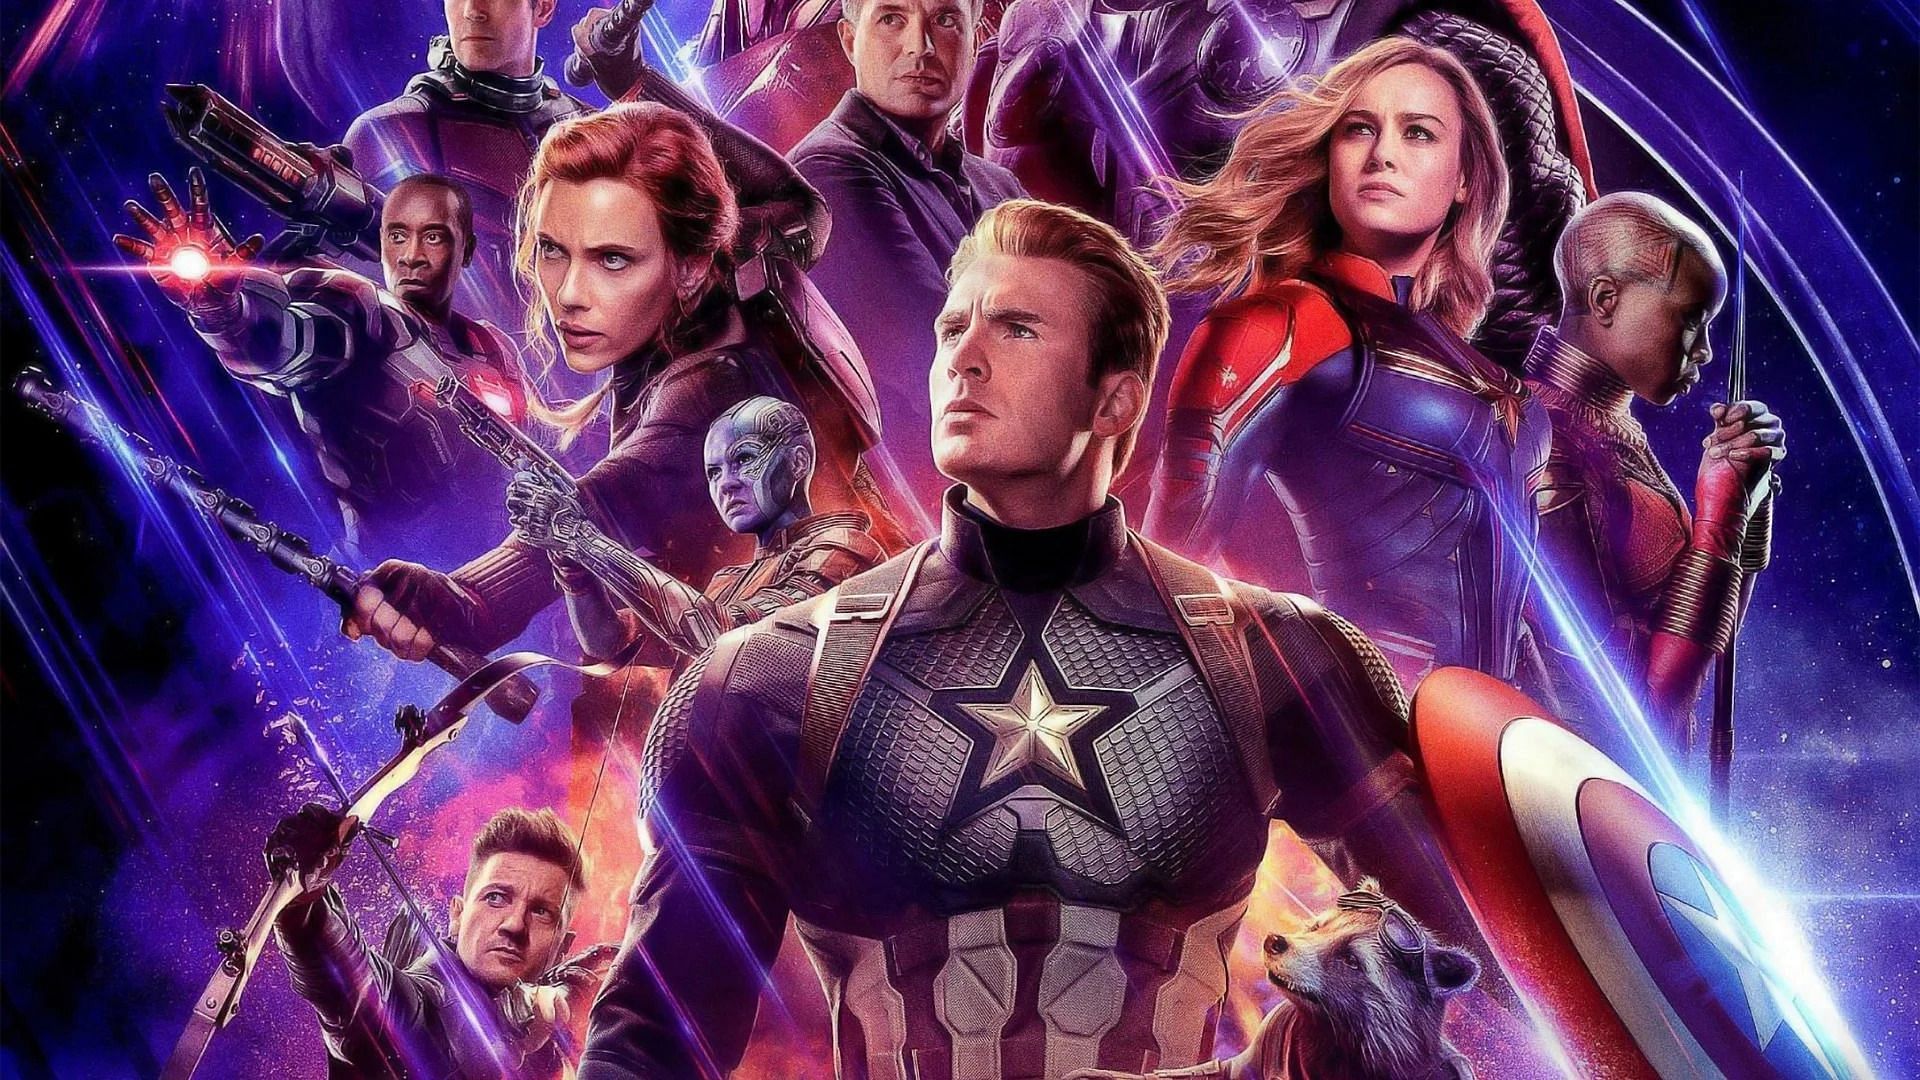 A poster for Avengers: Endgame (Image via Marvel Studios)